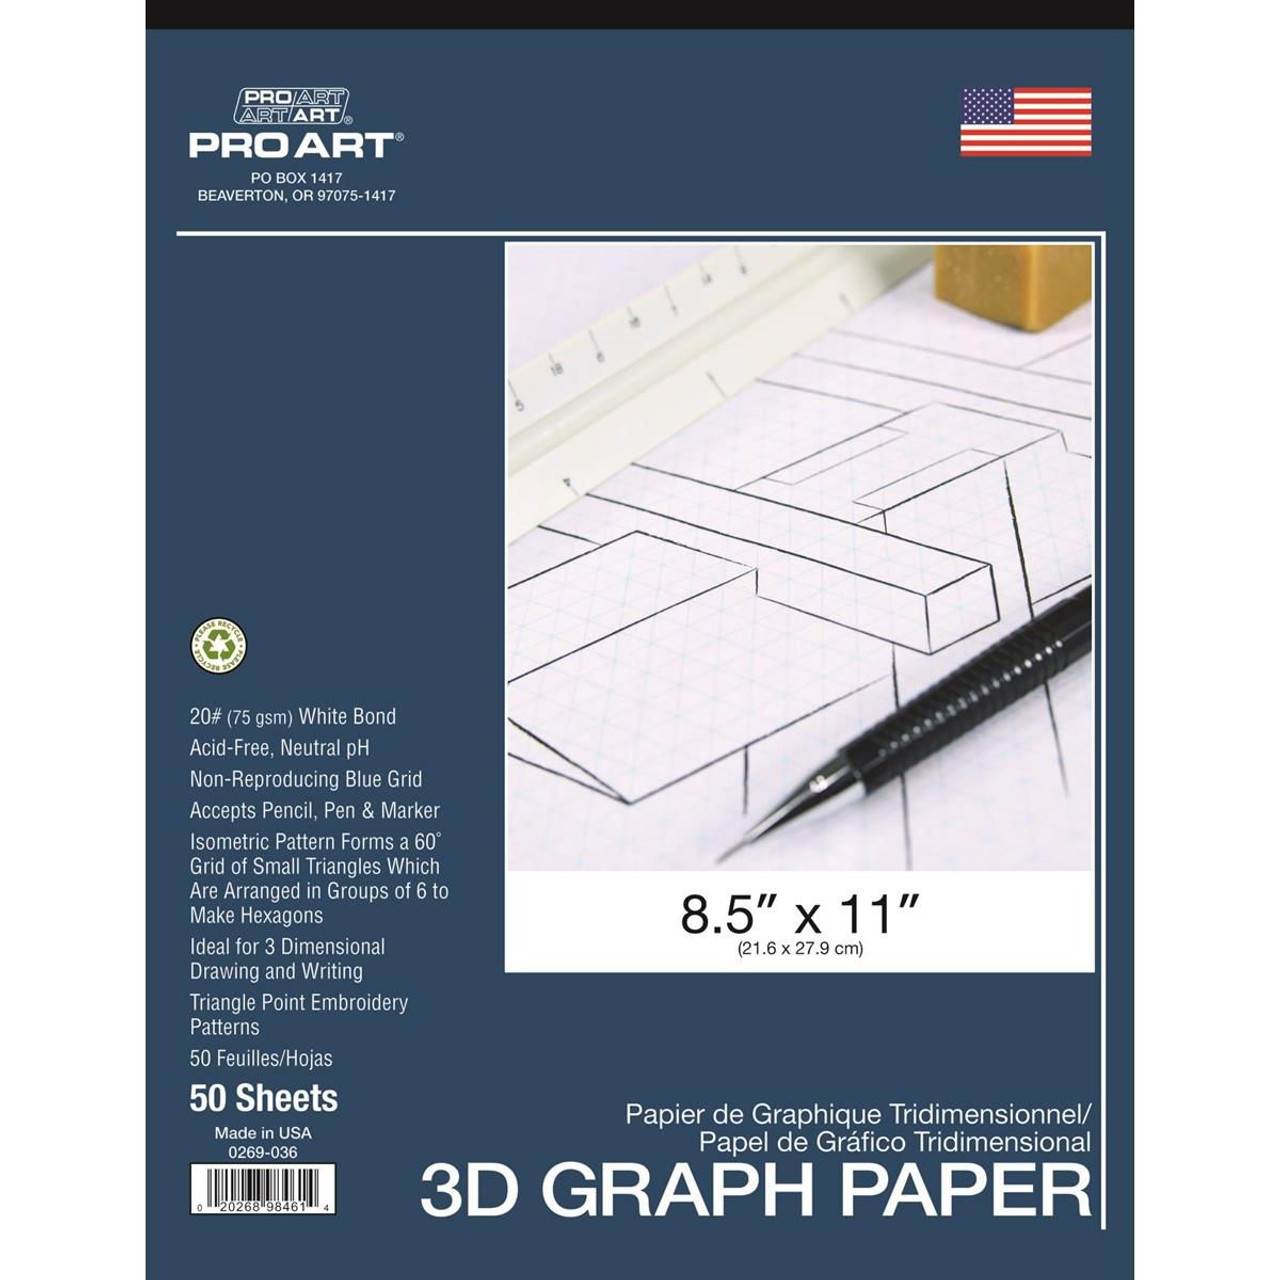 Pro Art 3D Graph Paper Pad - FLAX art & design